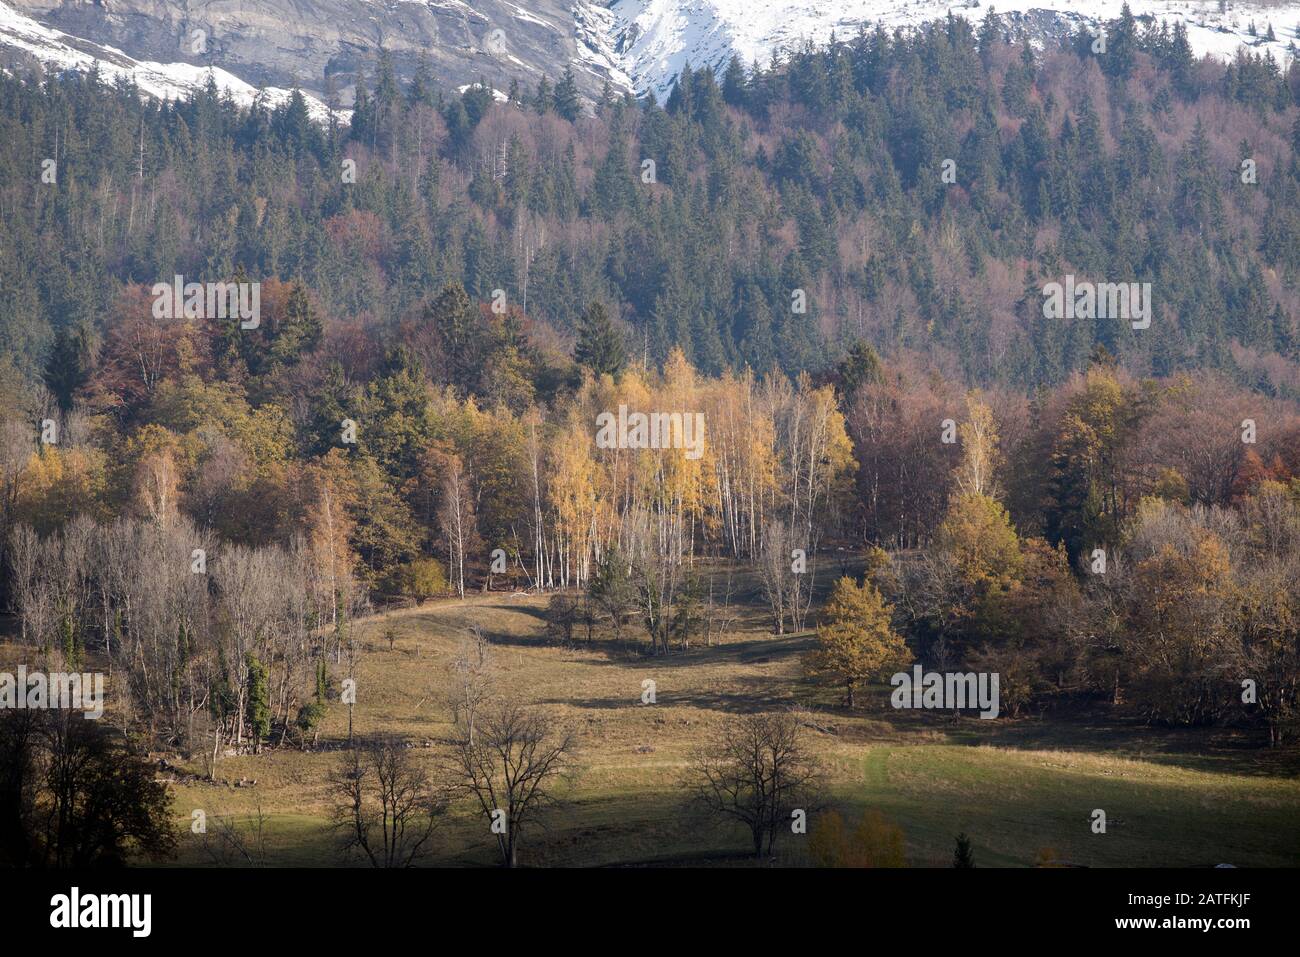 France, Haute-Savoie (74), Alps, woods in autumn Stock Photo